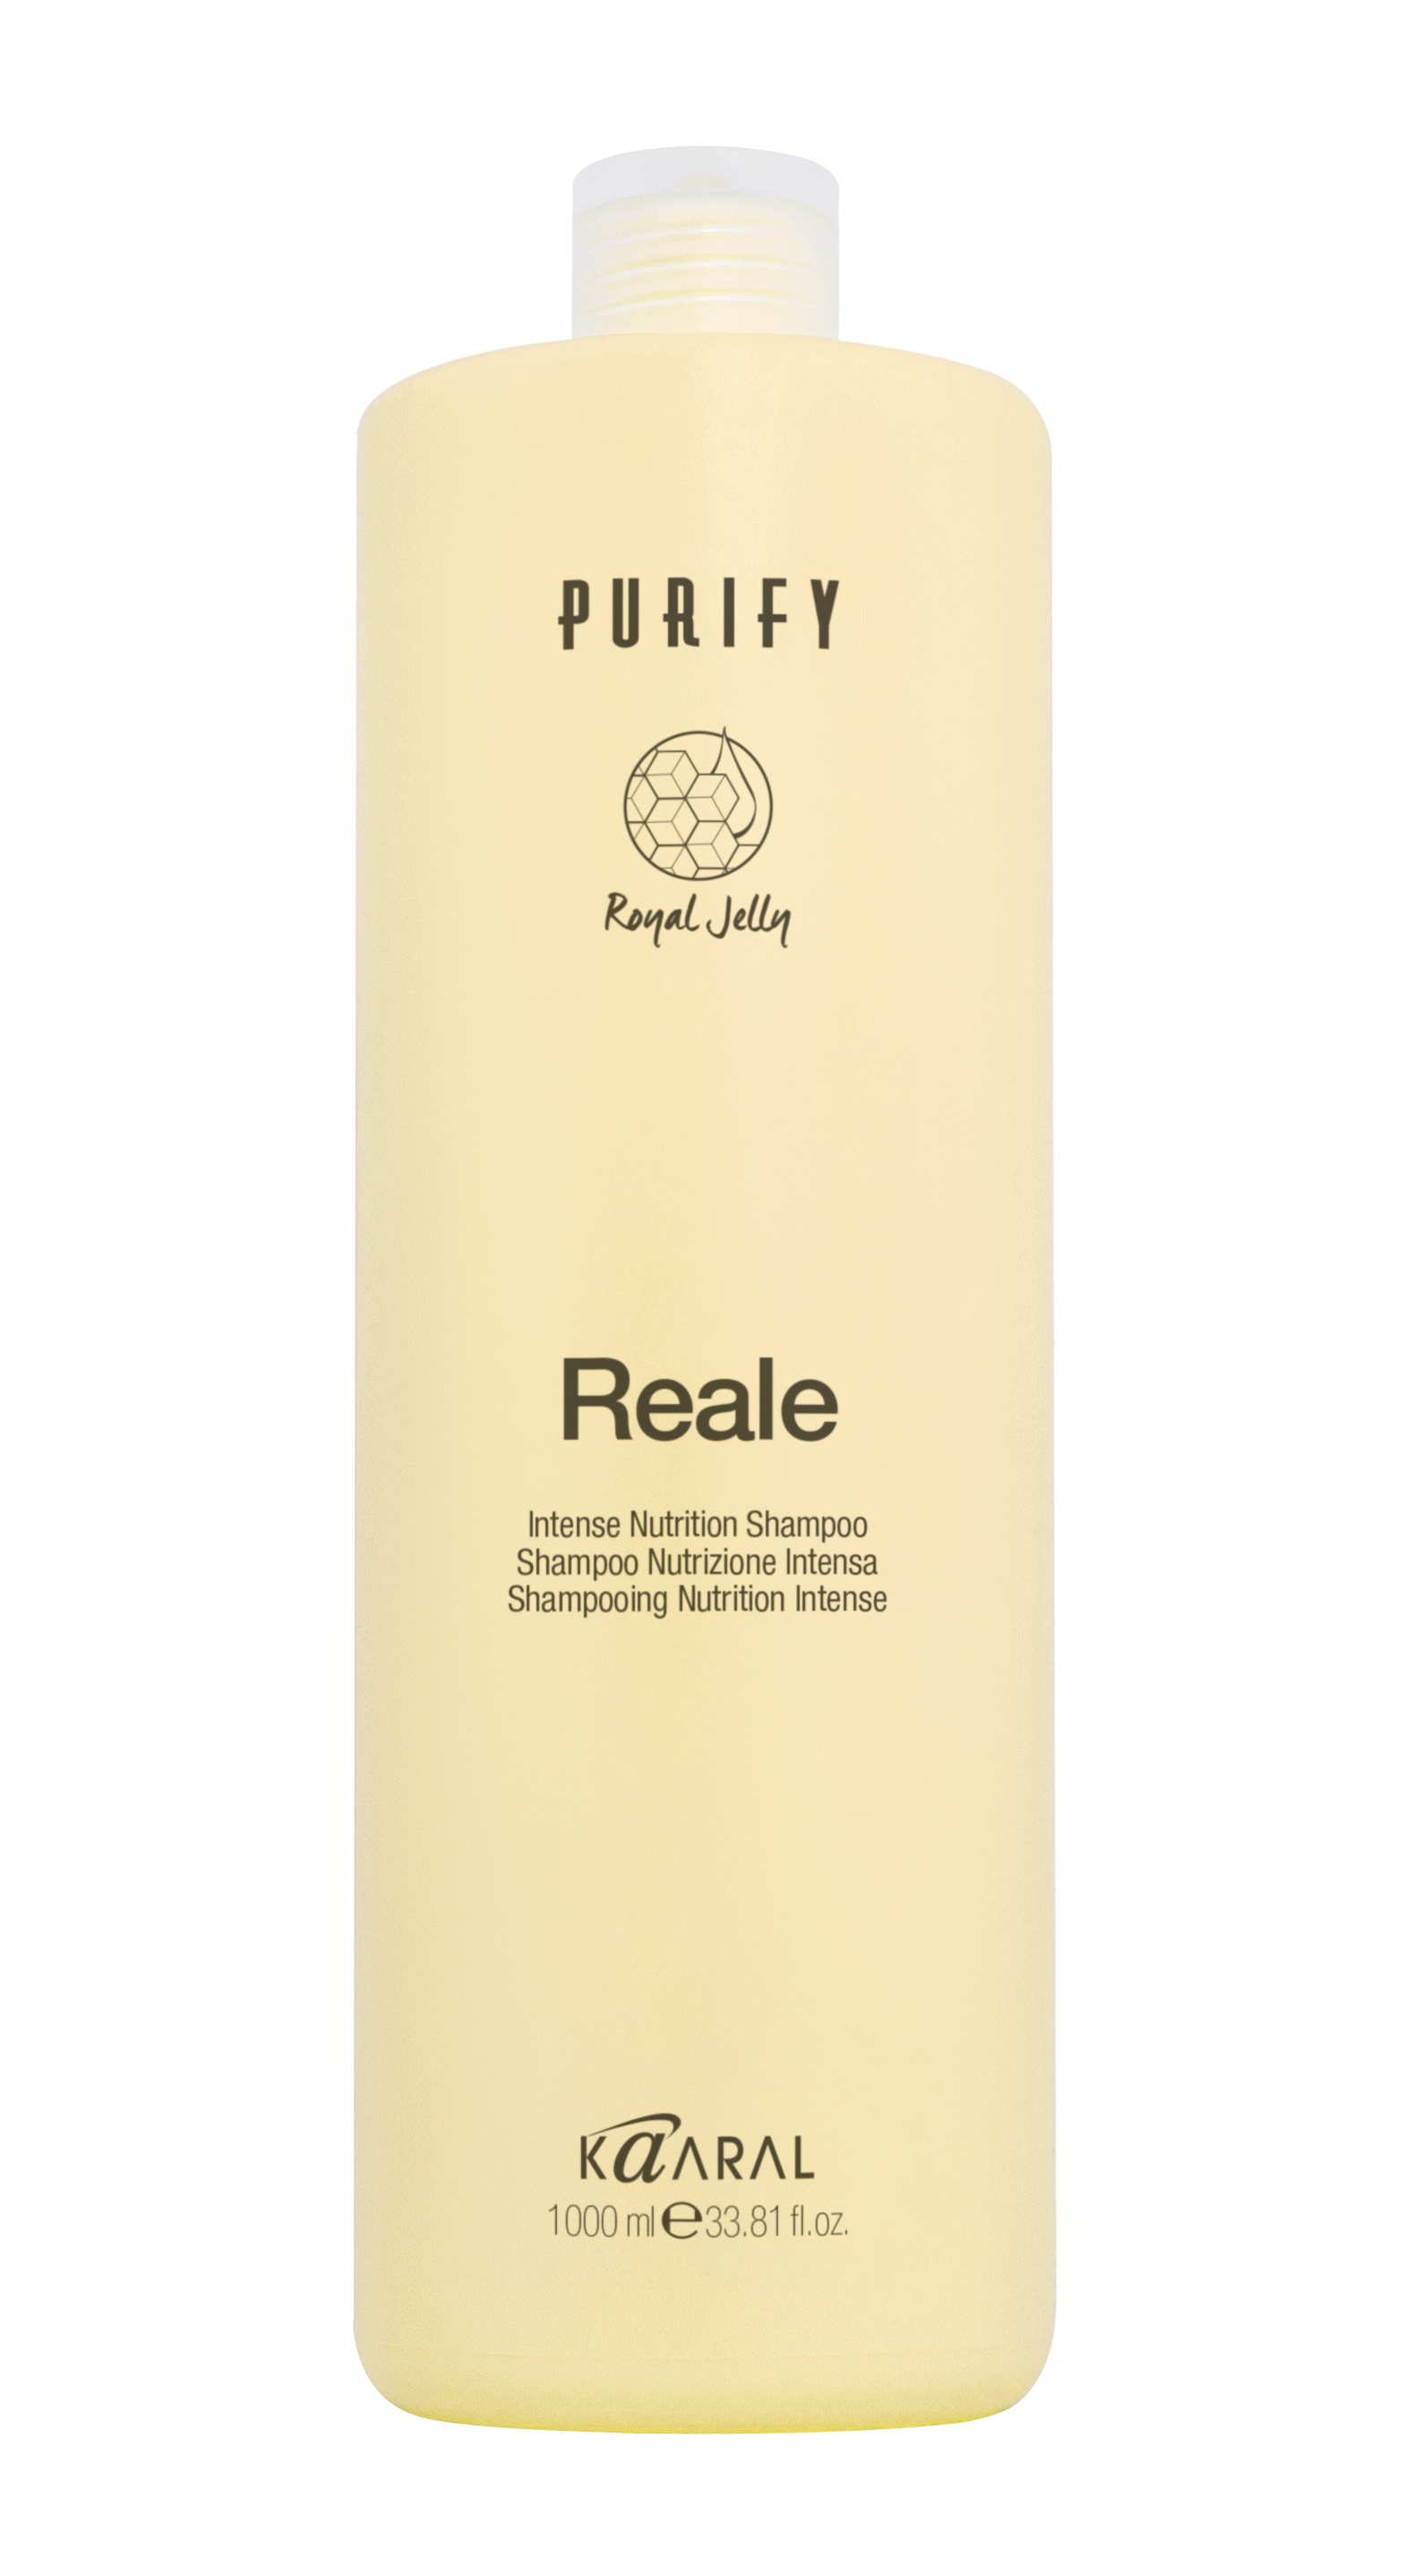 PURIFY Reale Shampoo by KAARAL